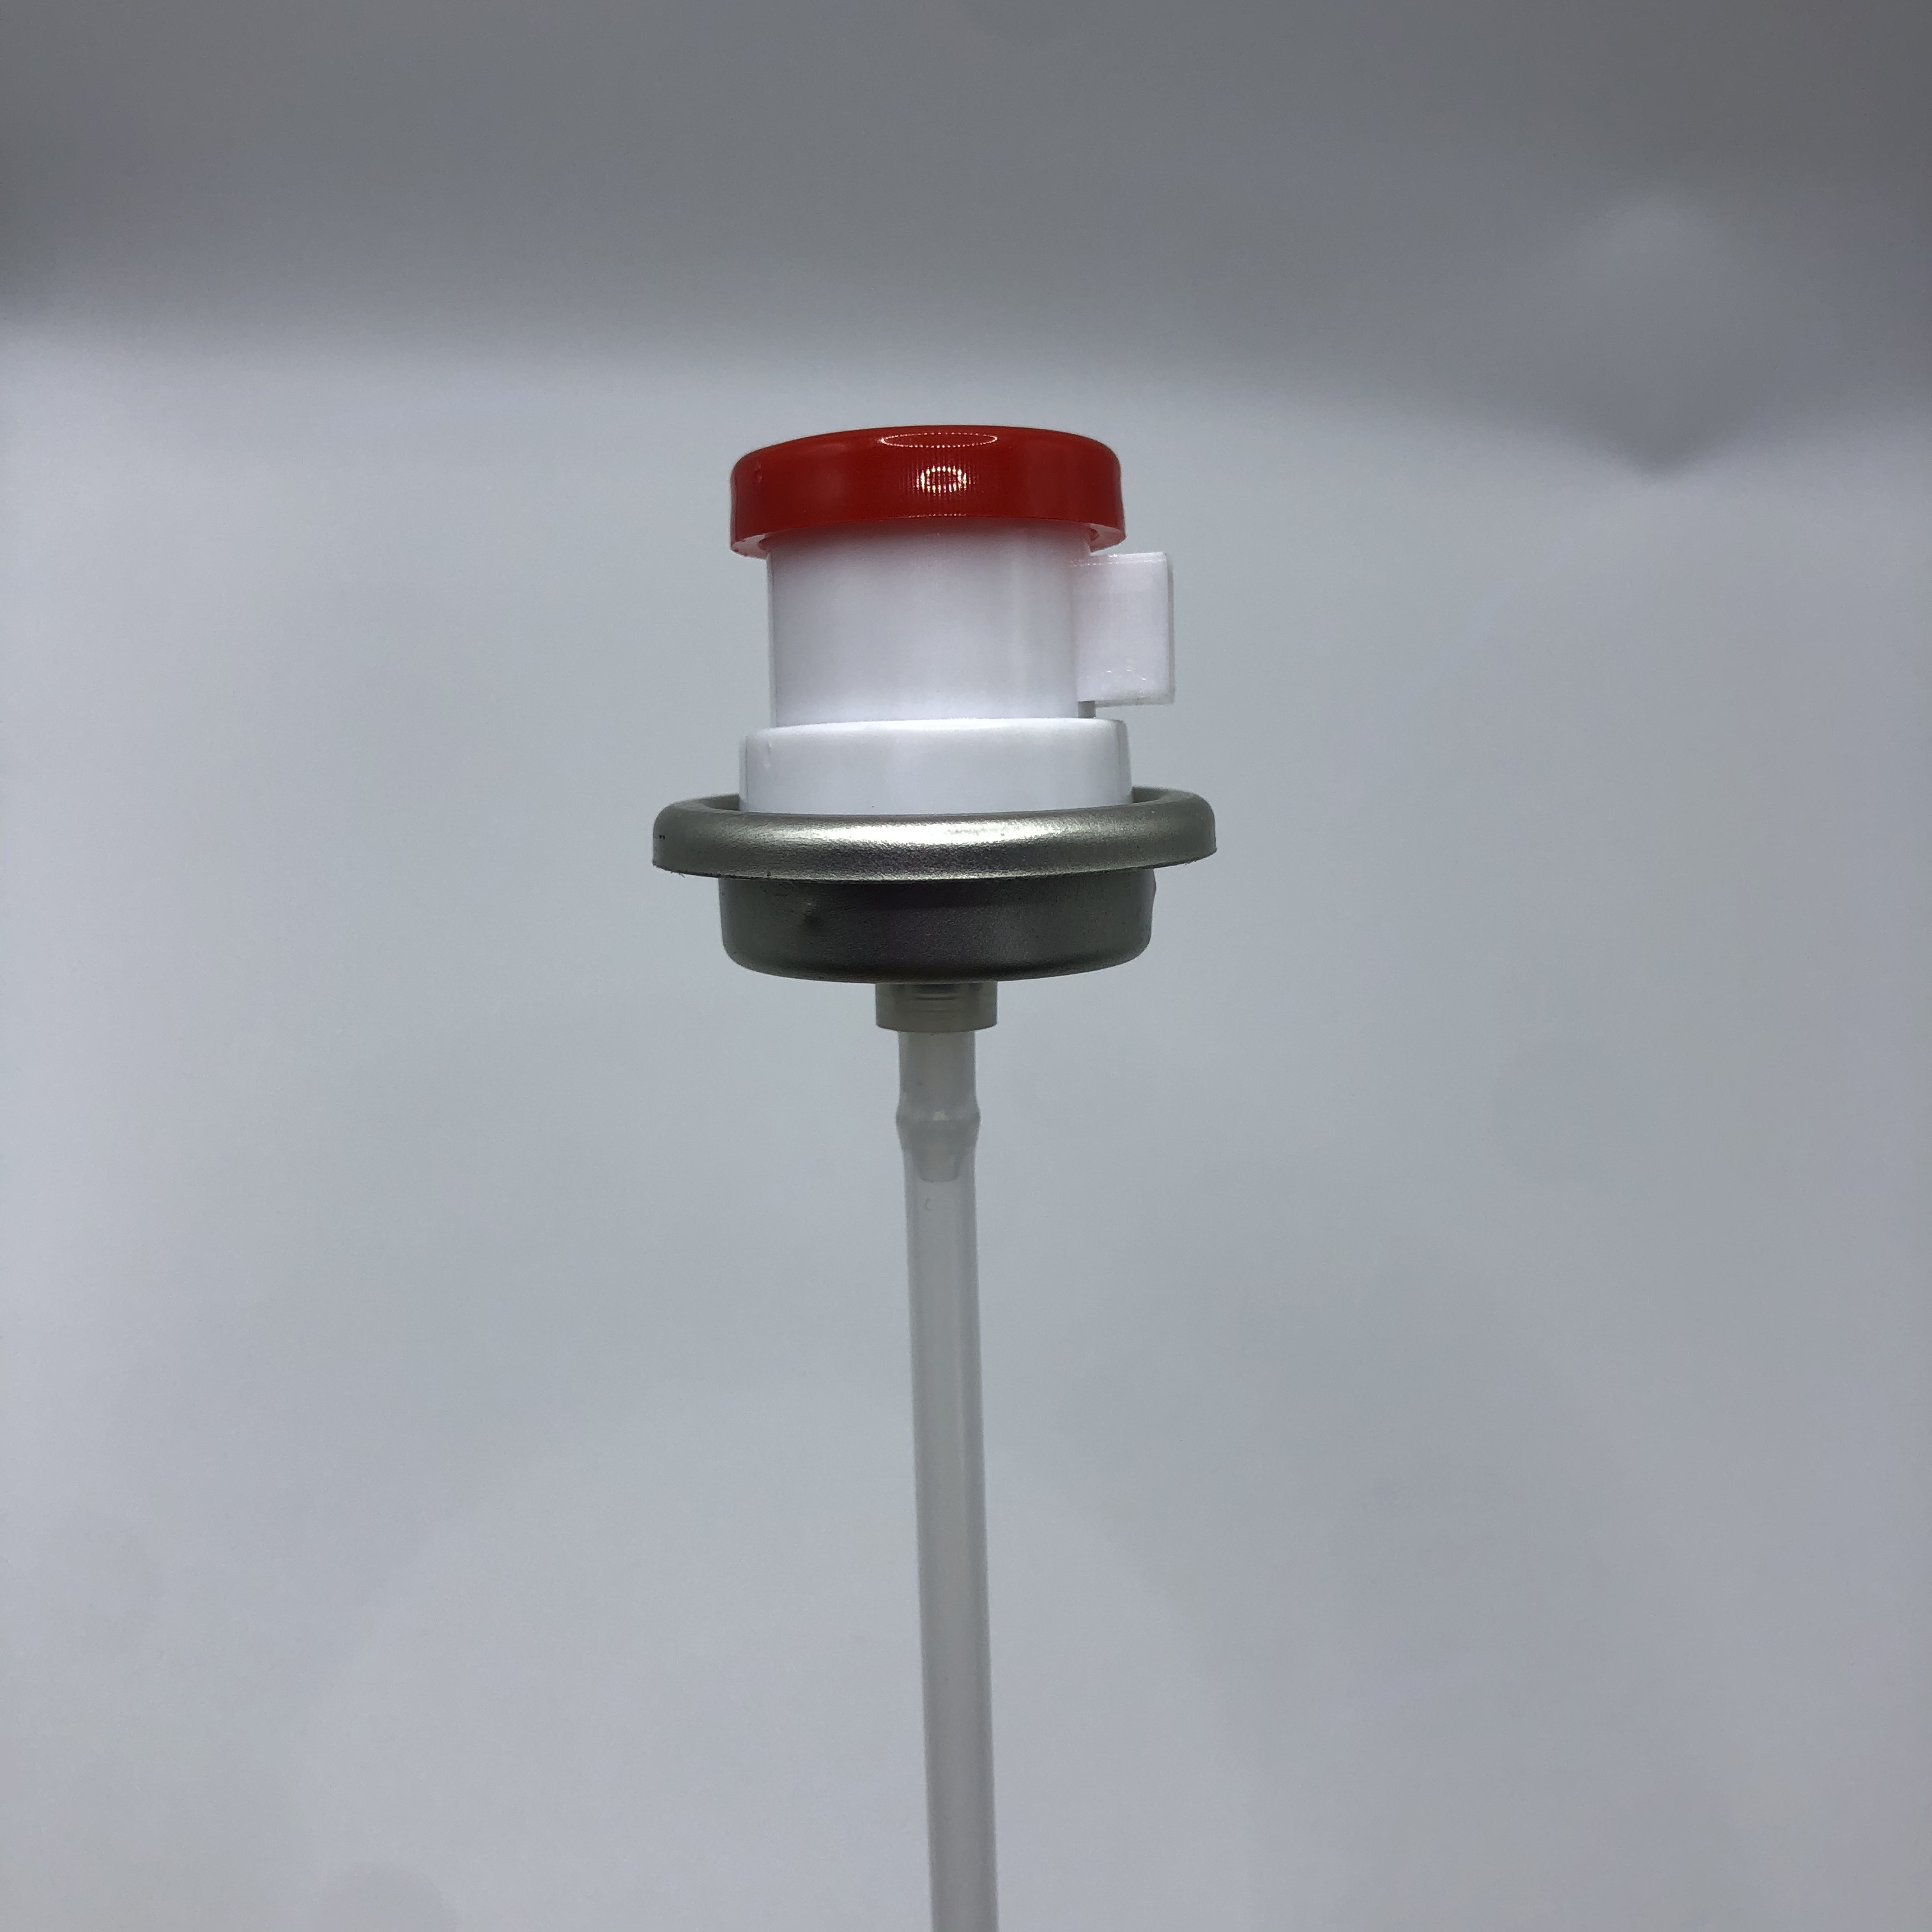 Βιομηχανική αποσμητική βαλβίδα σπρέι βαρέως τύπου αεροζόλ για εμπορικές εφαρμογές